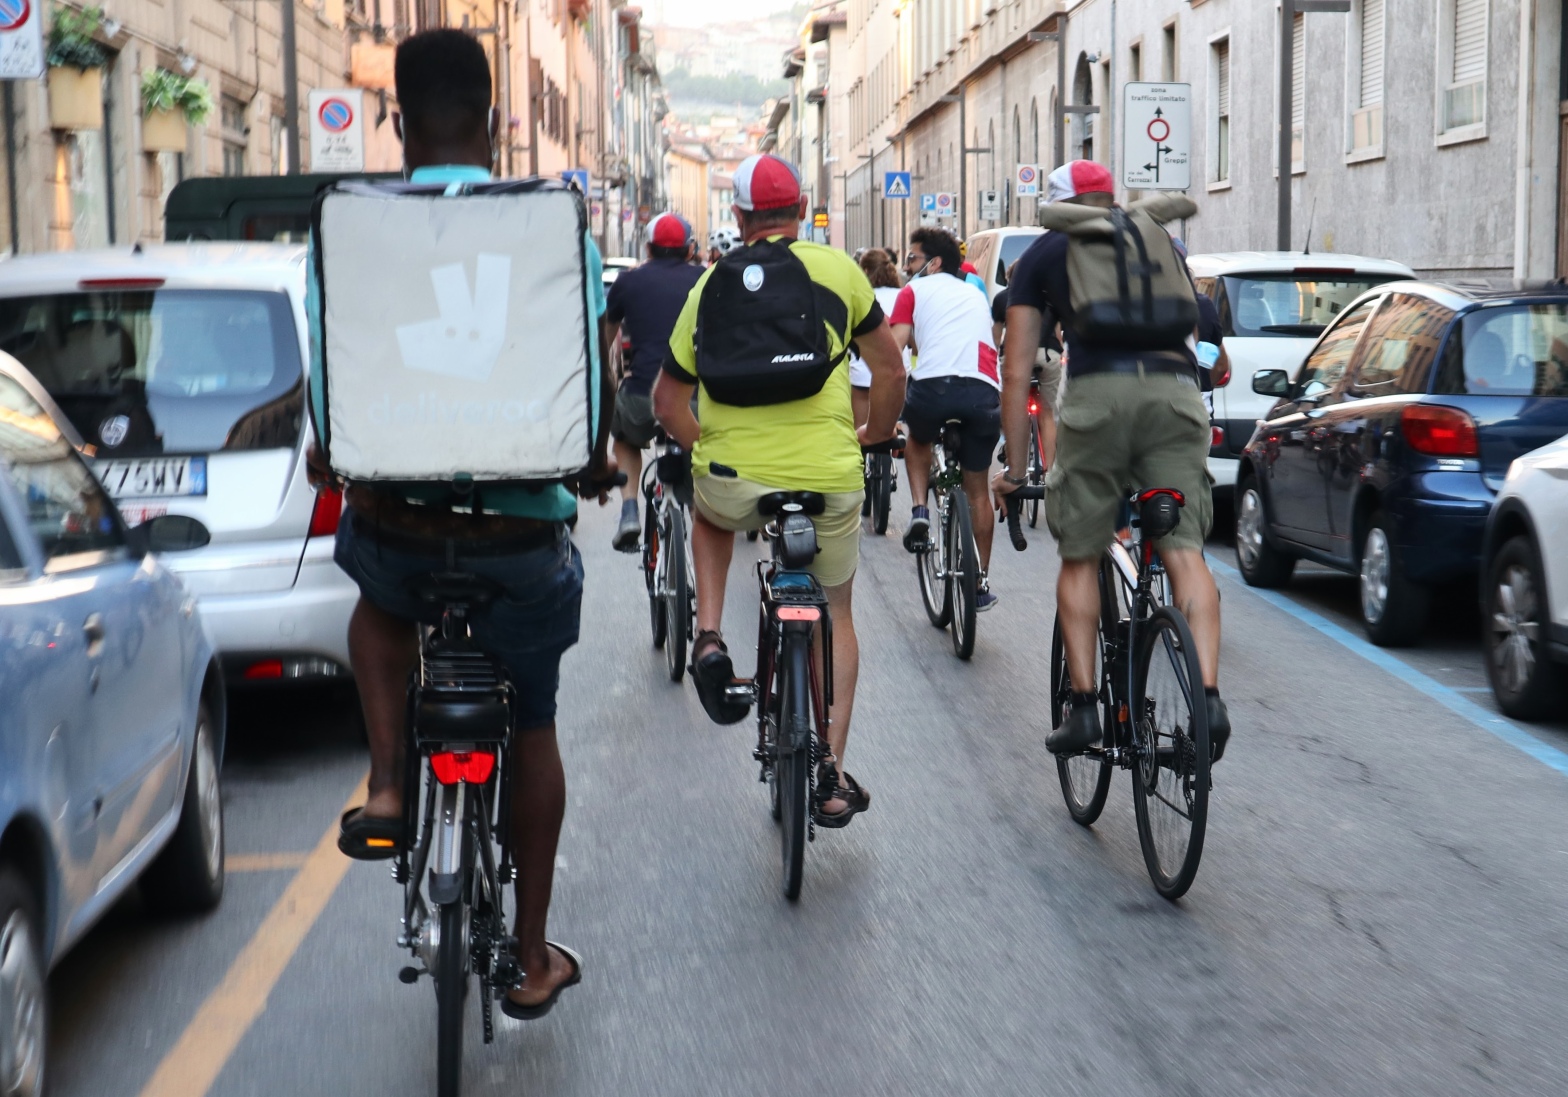 Come incentivare la mobilità ciclistica? Diventando automobilisti migliori